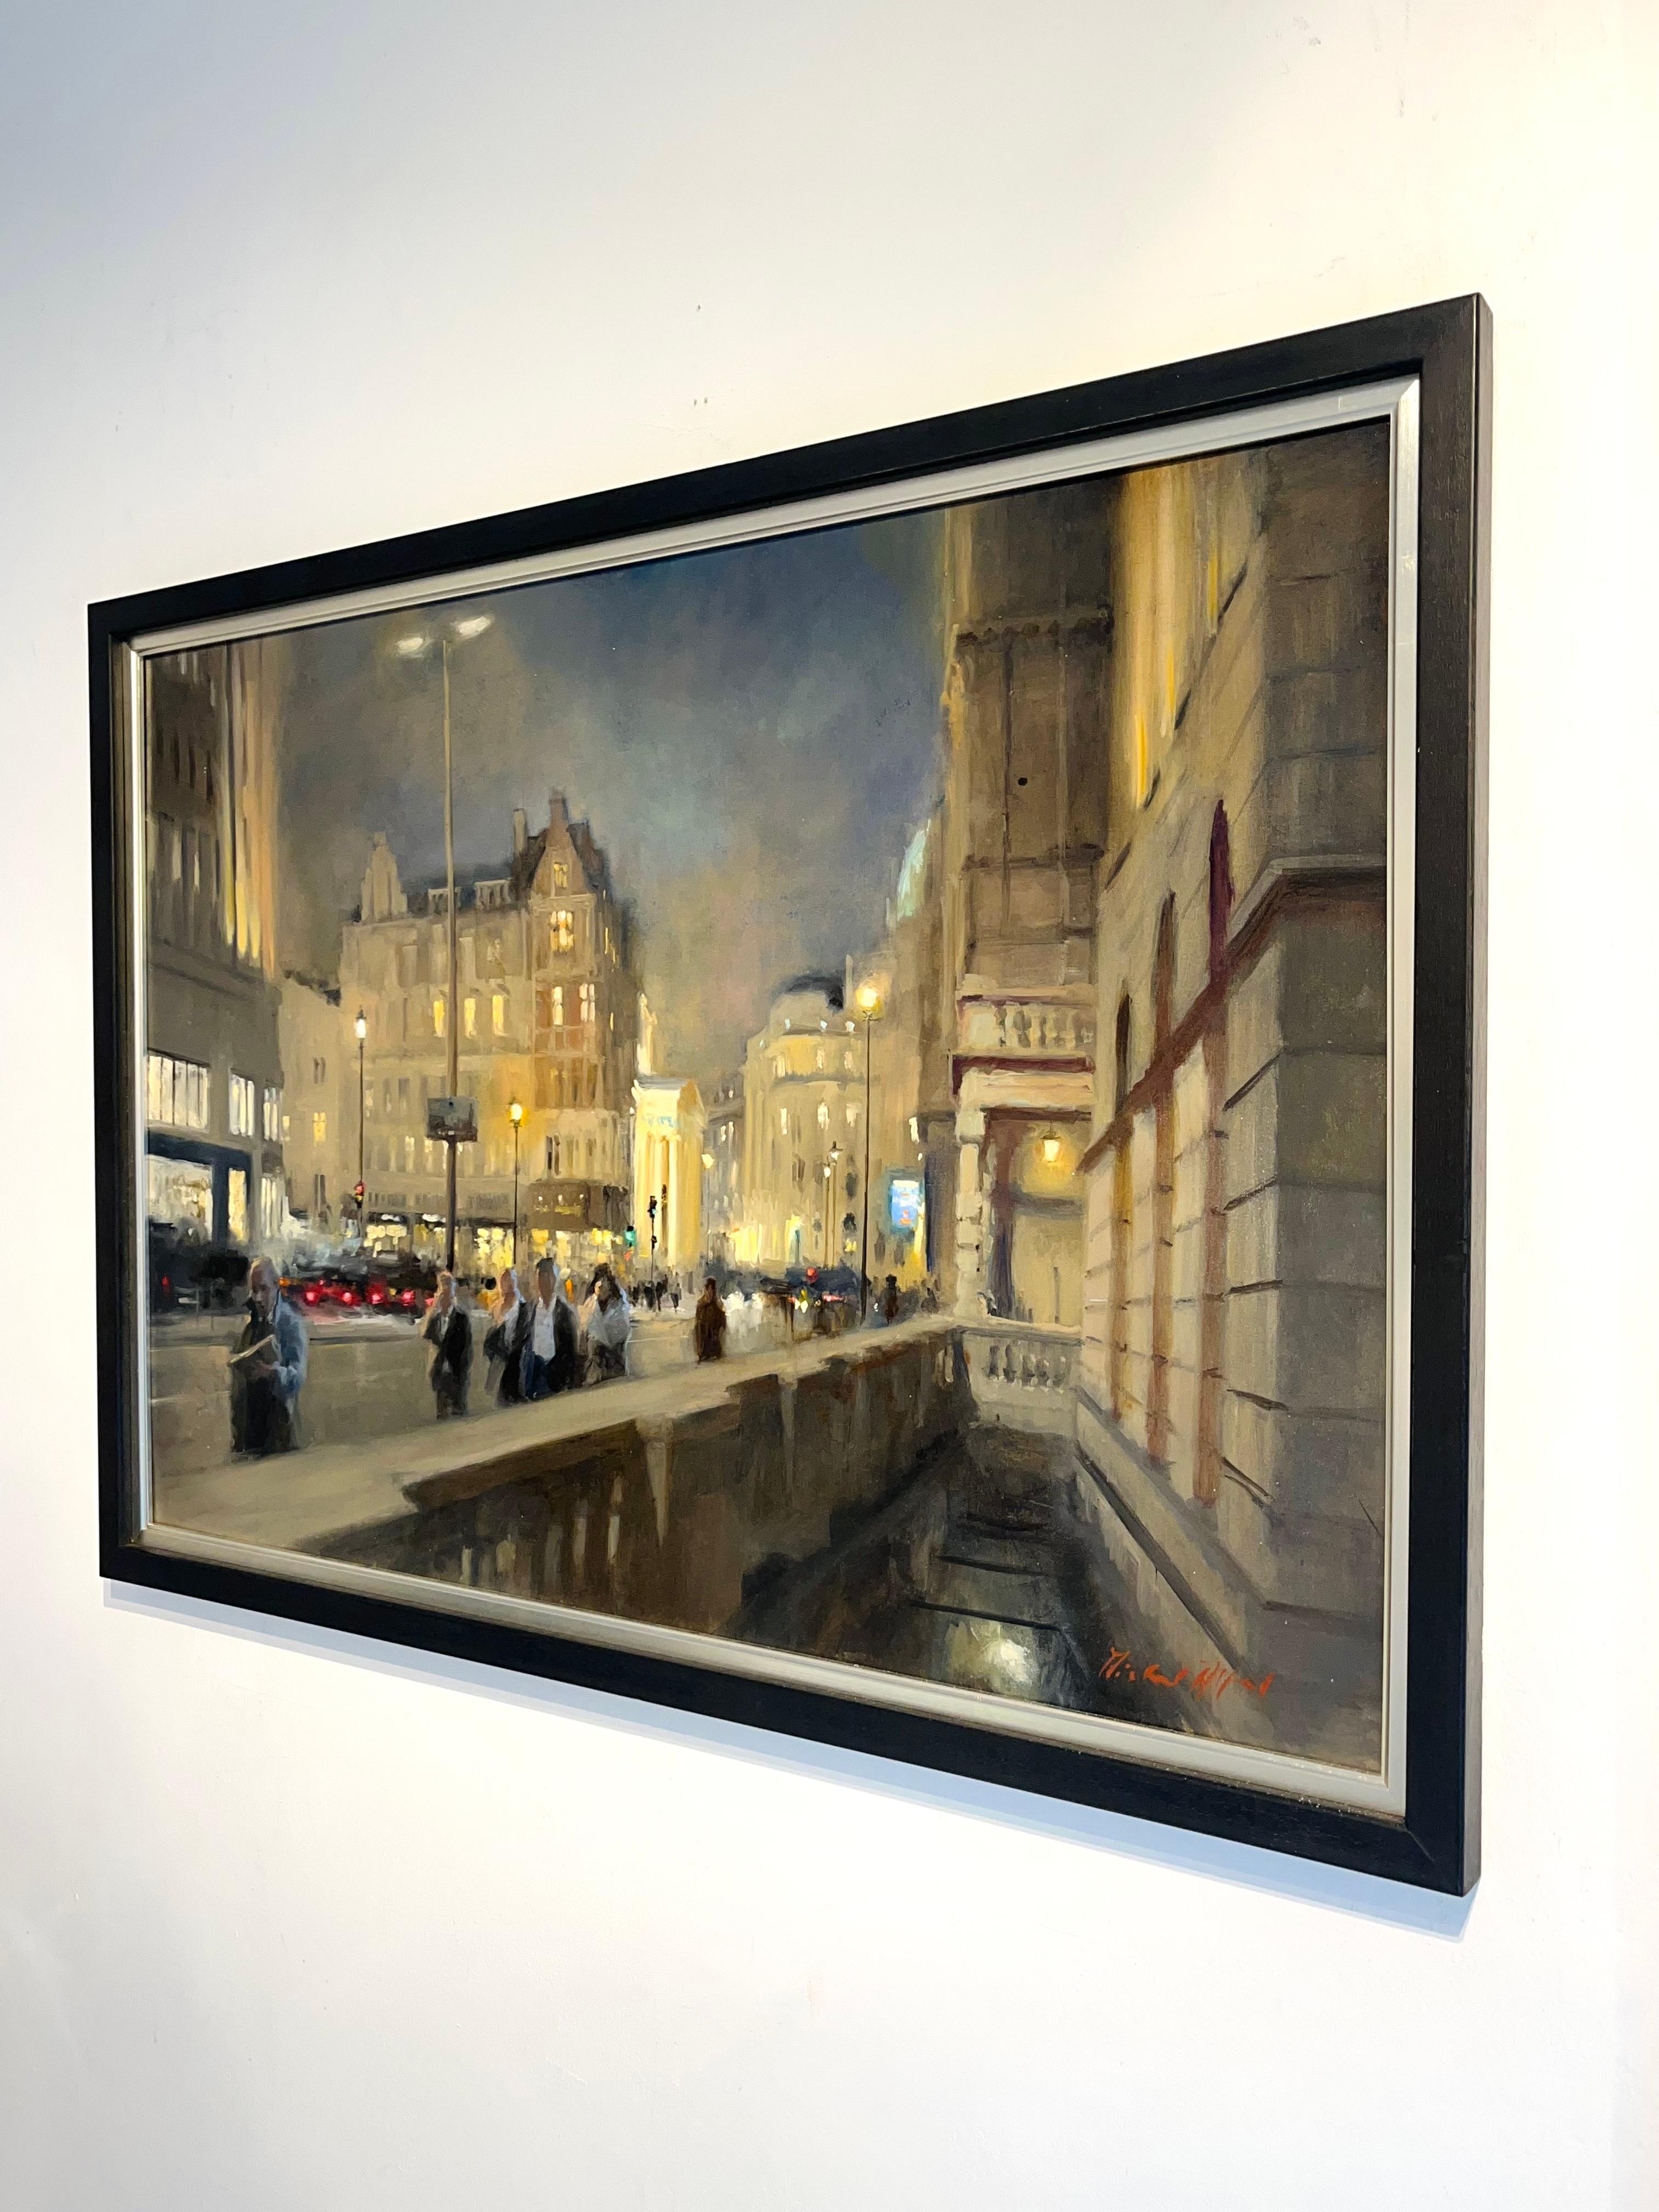 Waterloo Bridge-impressionistisches Stadtbild-Ölgemälde-zeitgenössische Kunst (Impressionismus), Painting, von Michael Alford